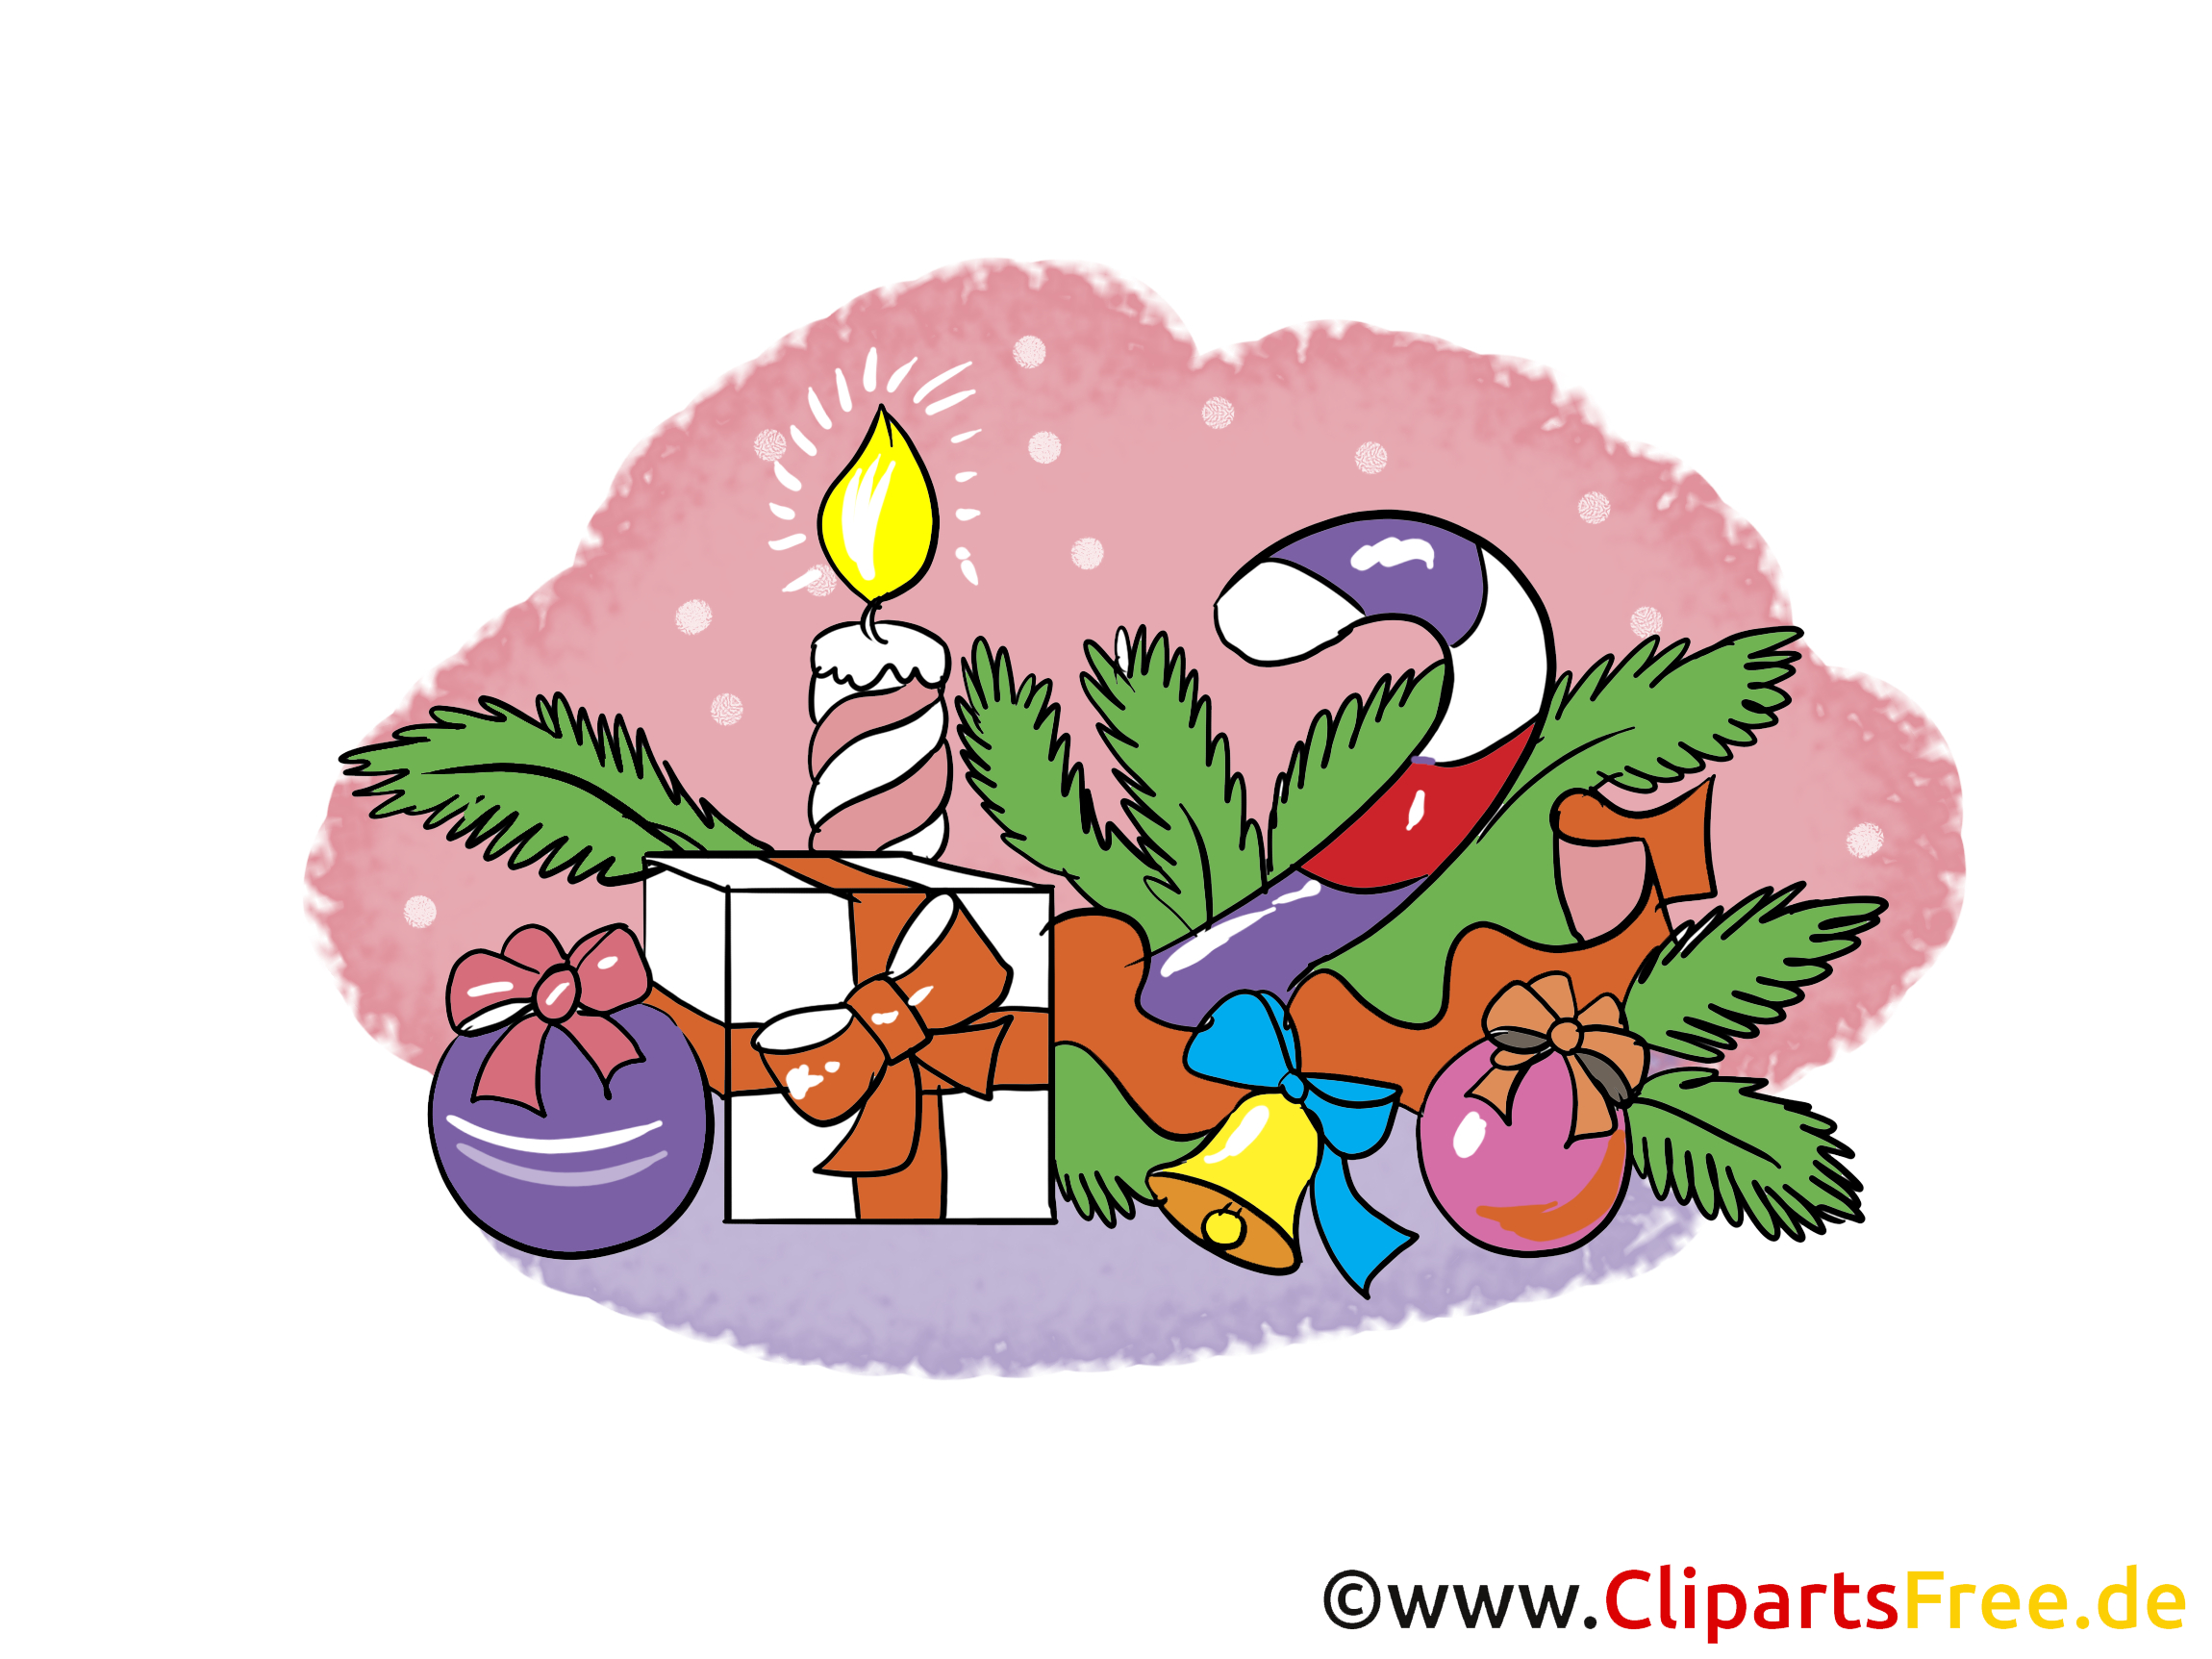 Free Cliparts Zu Silvester Und Weihnachten bei Clipart Weihnachten Kostenlos